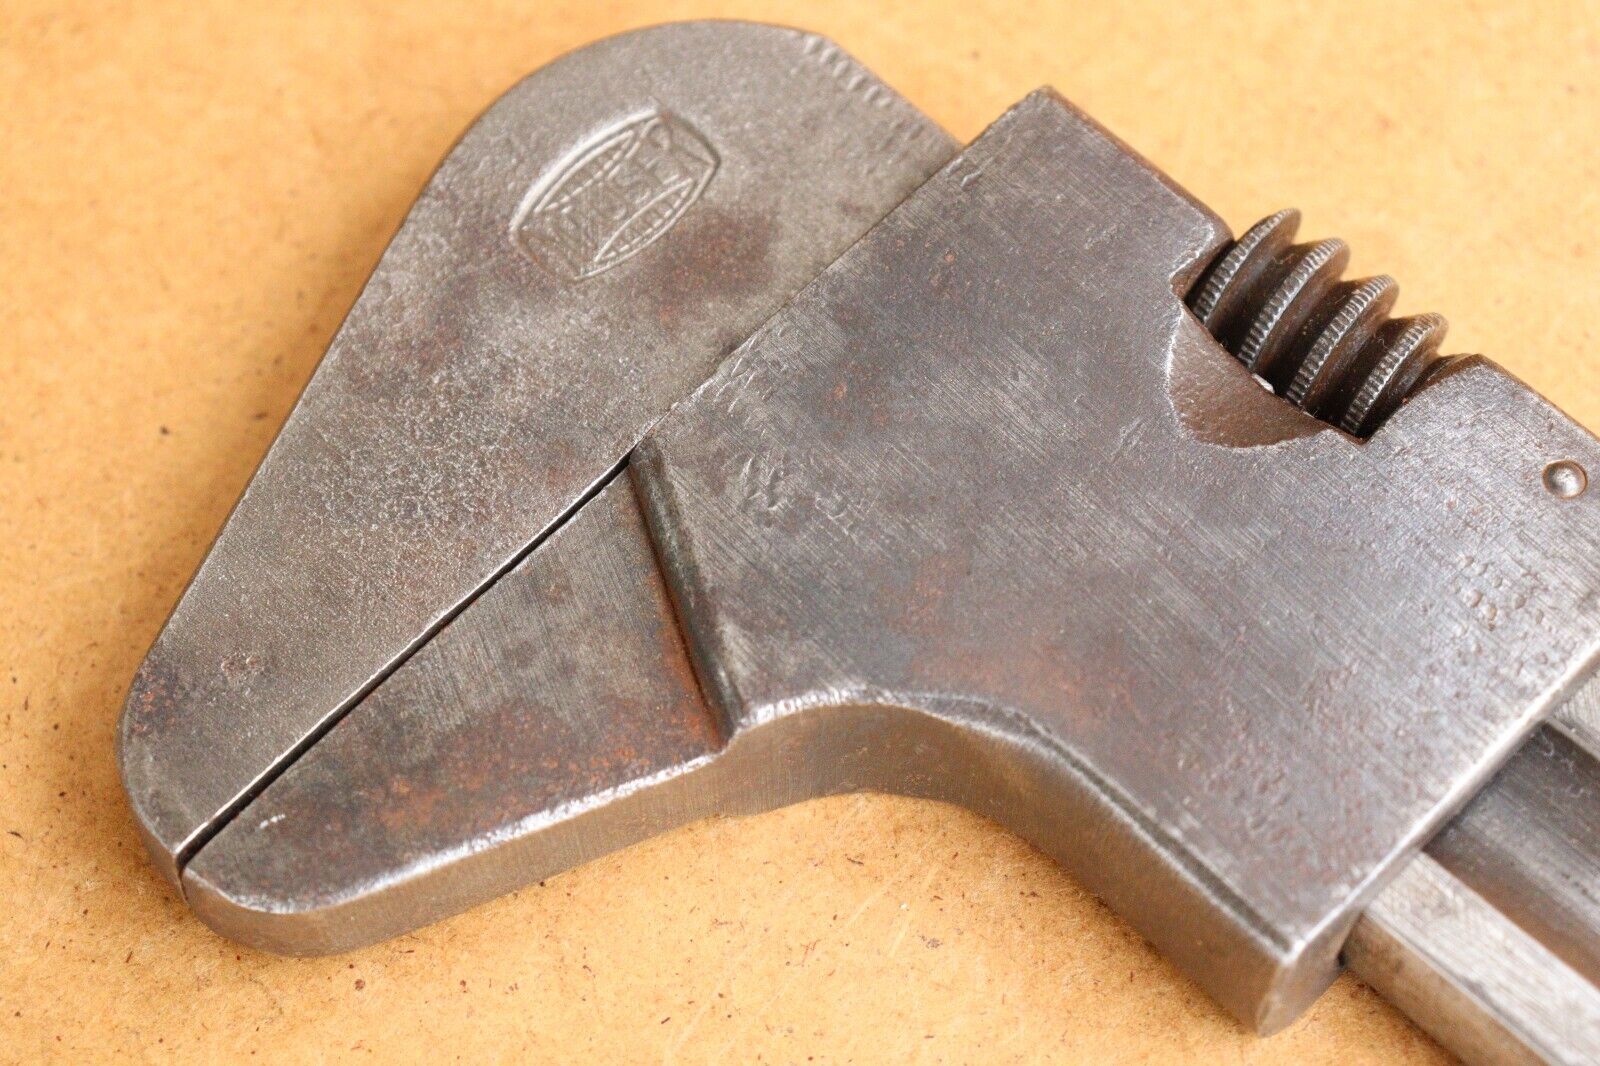 Rare WW2 WWII German Military Army Mauser Wrench Key Monkey Key Tool Marked